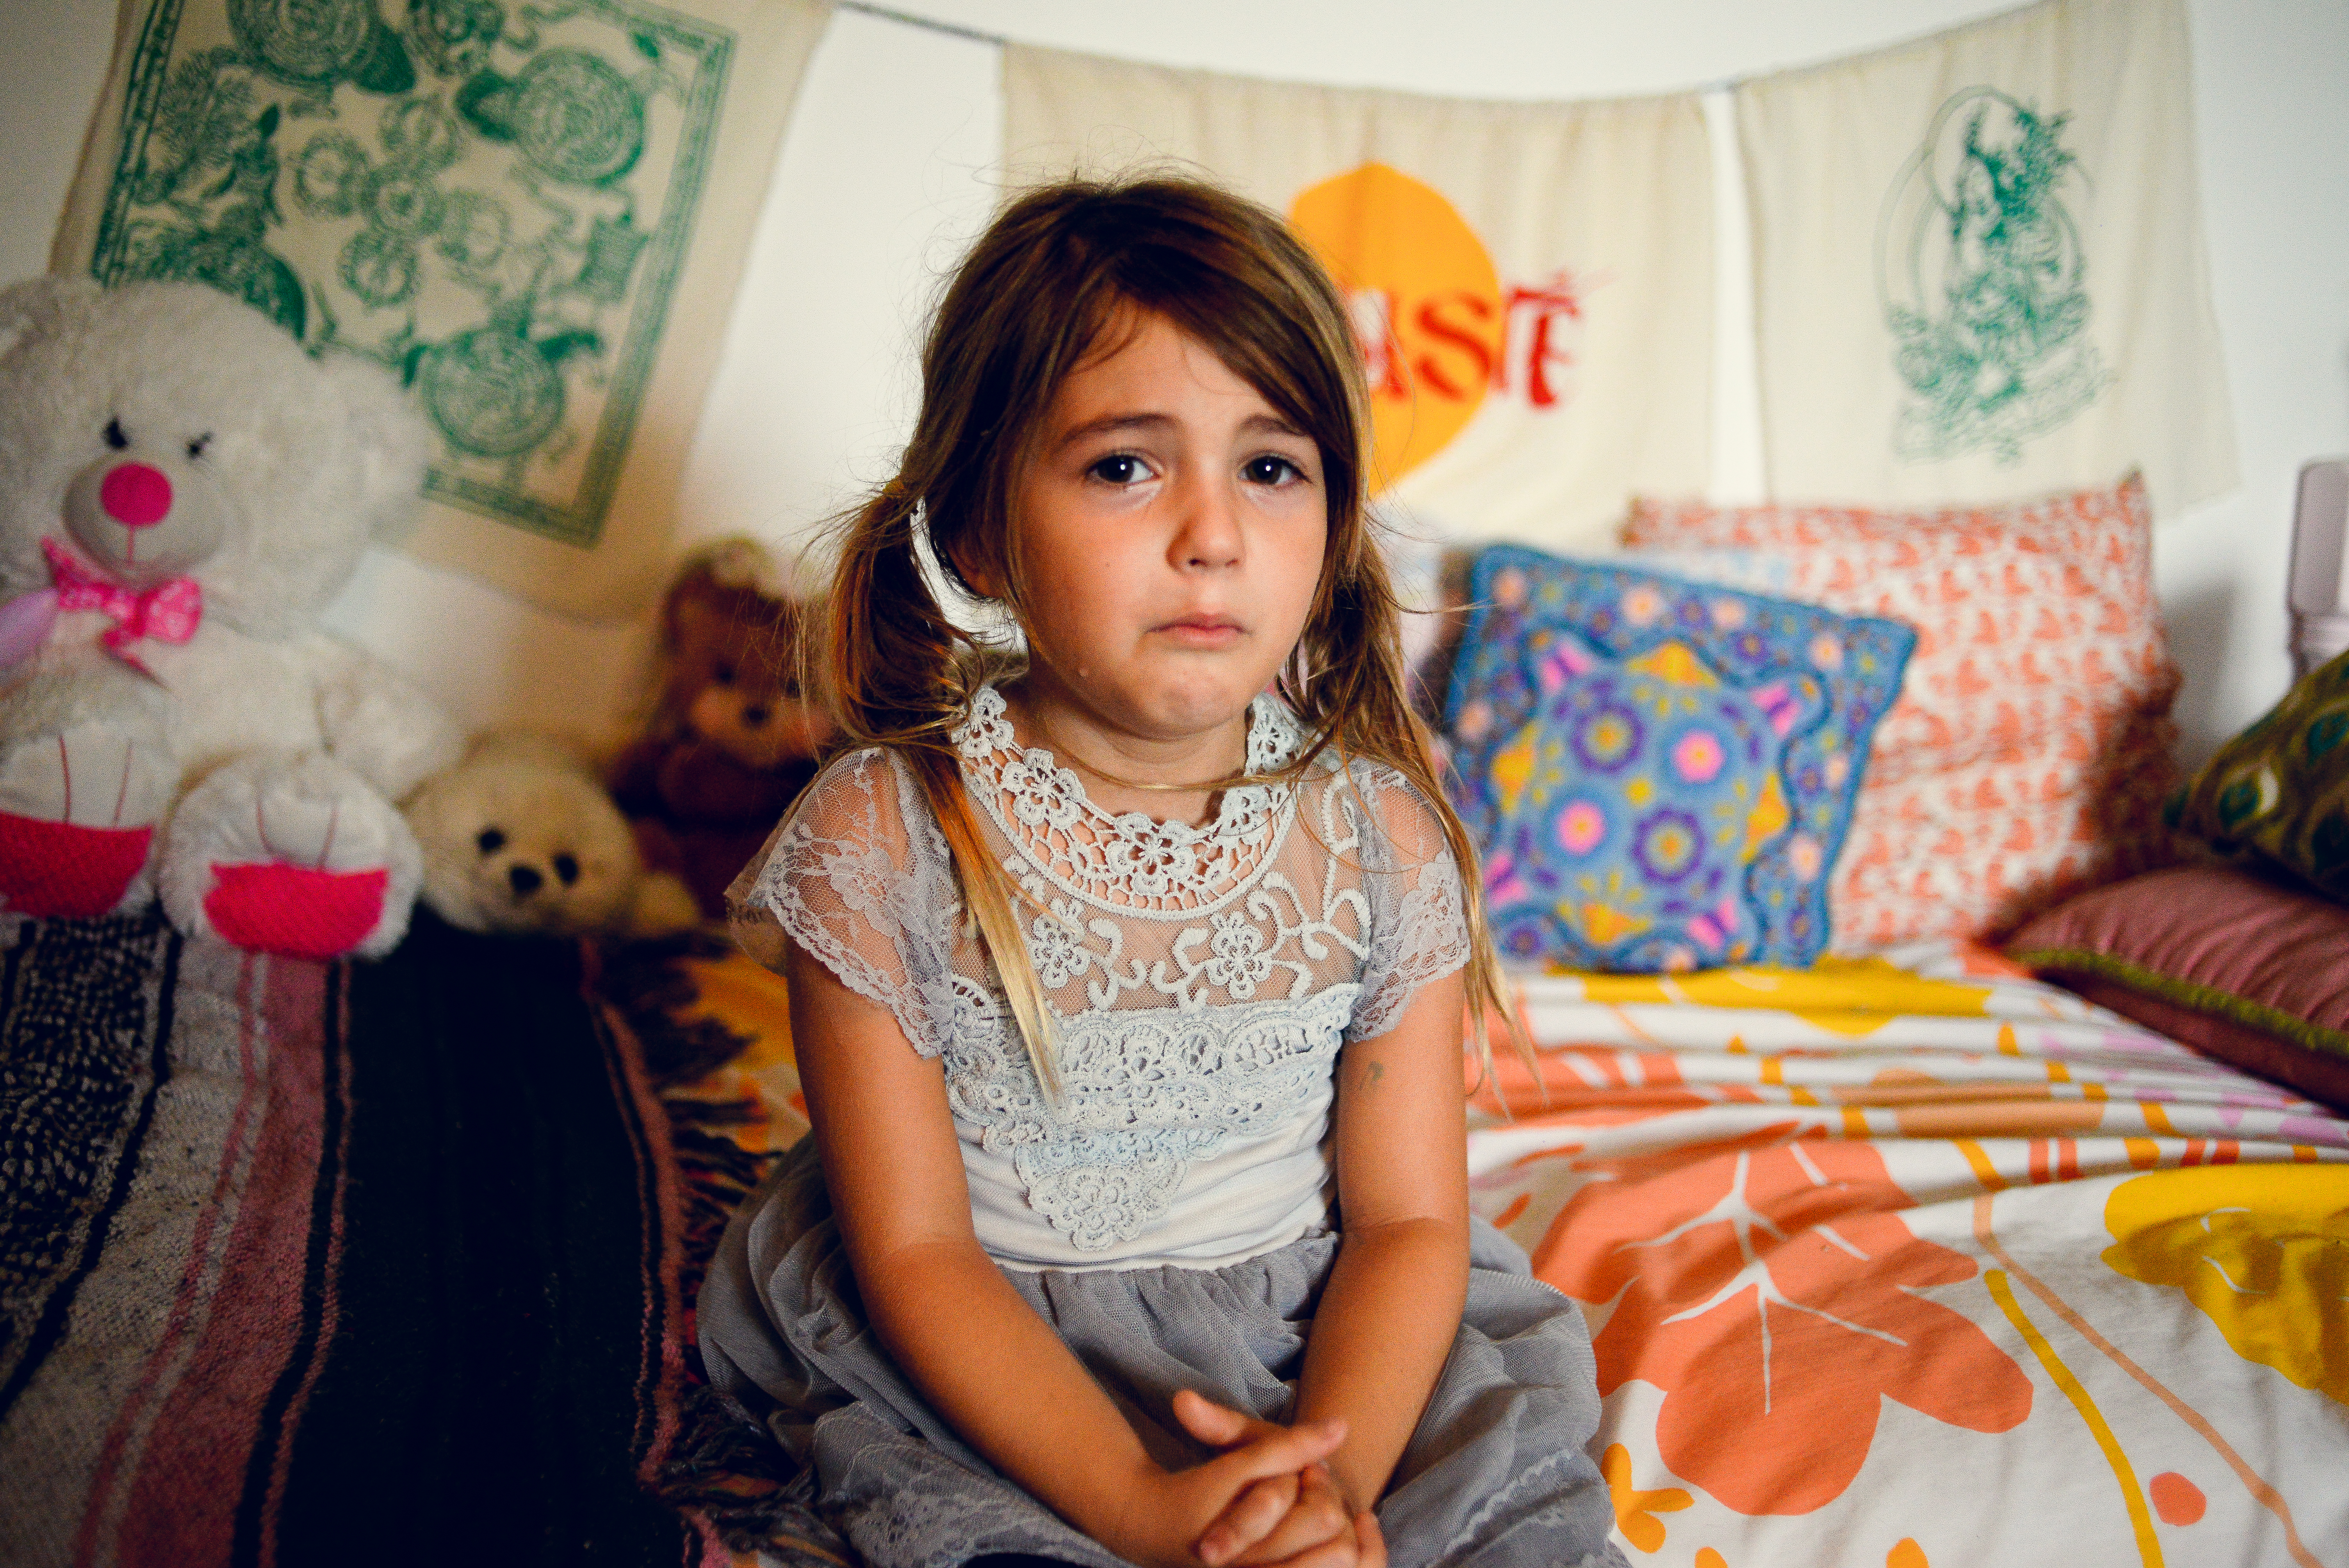 Une petite fille en pleurs | Source : Getty Images